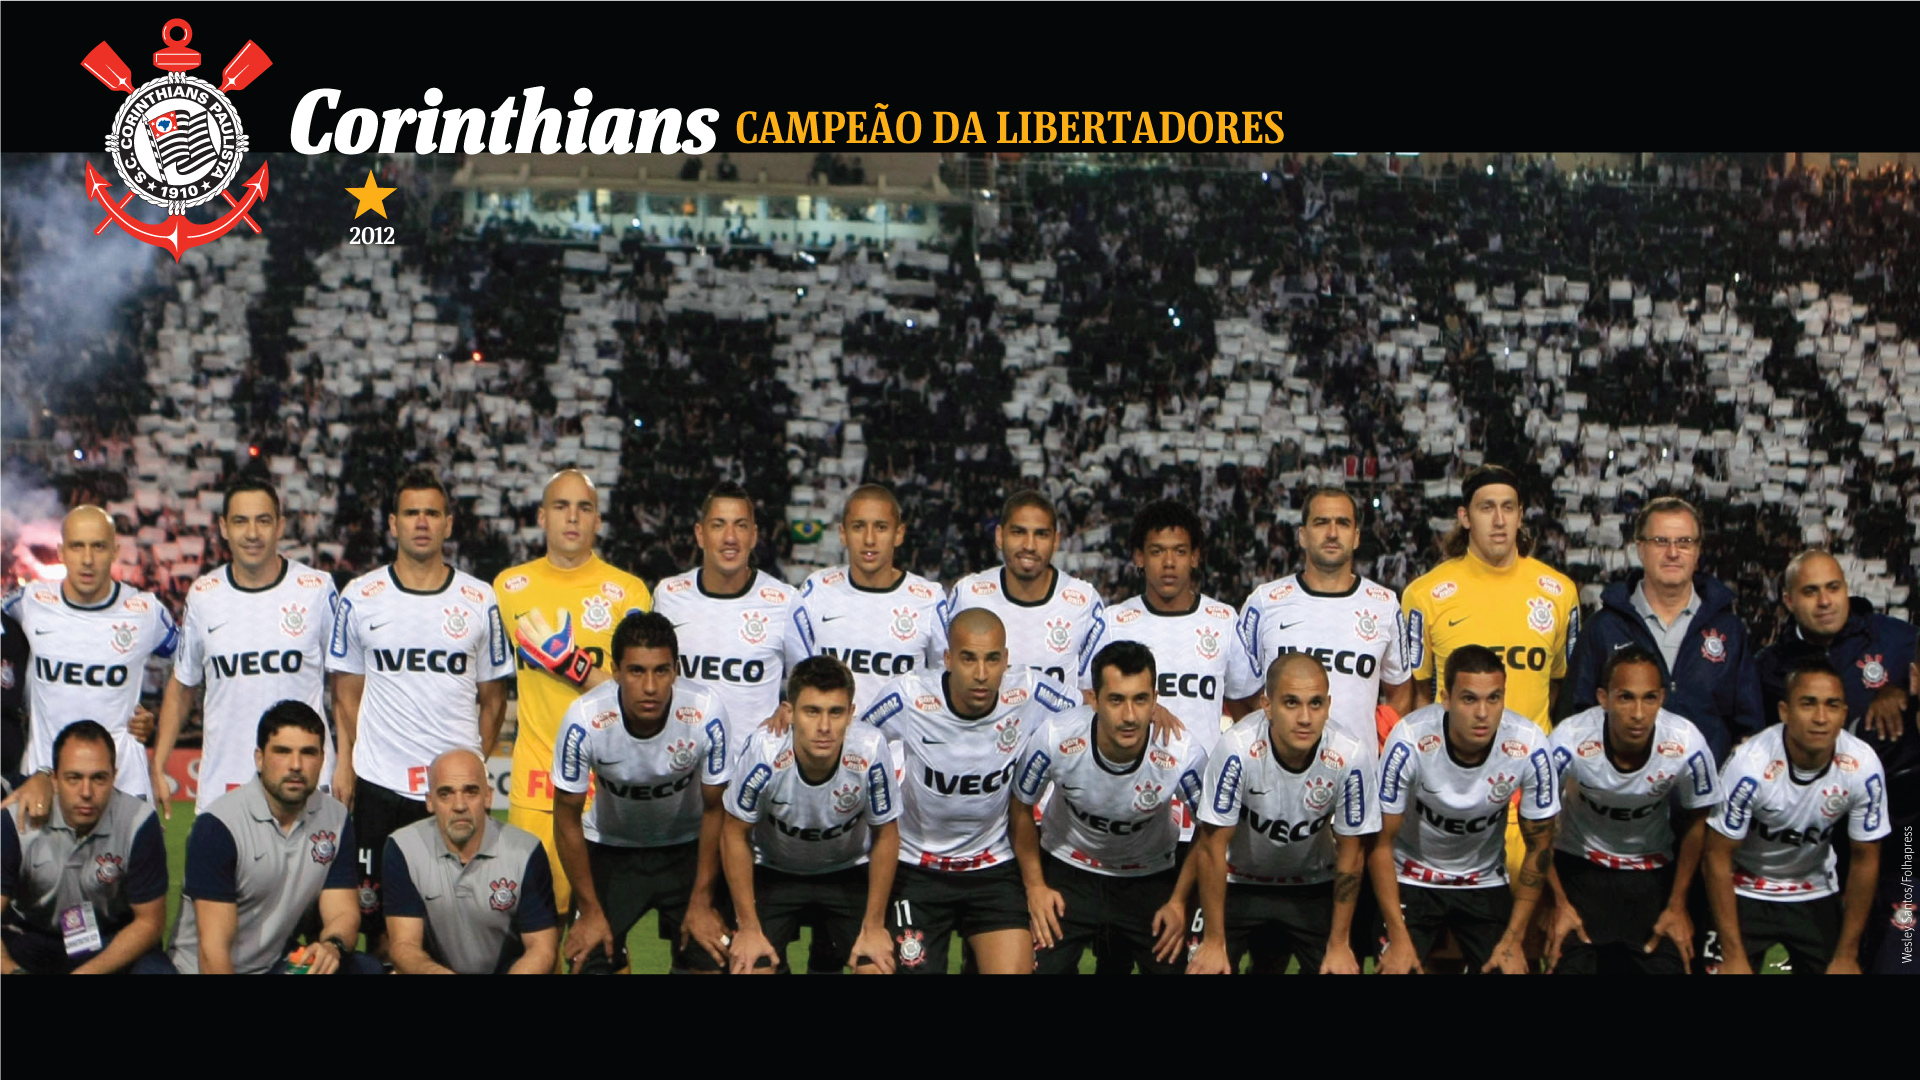 Wallpaper Corinthians Campeão da Libertadores 2012 - 11